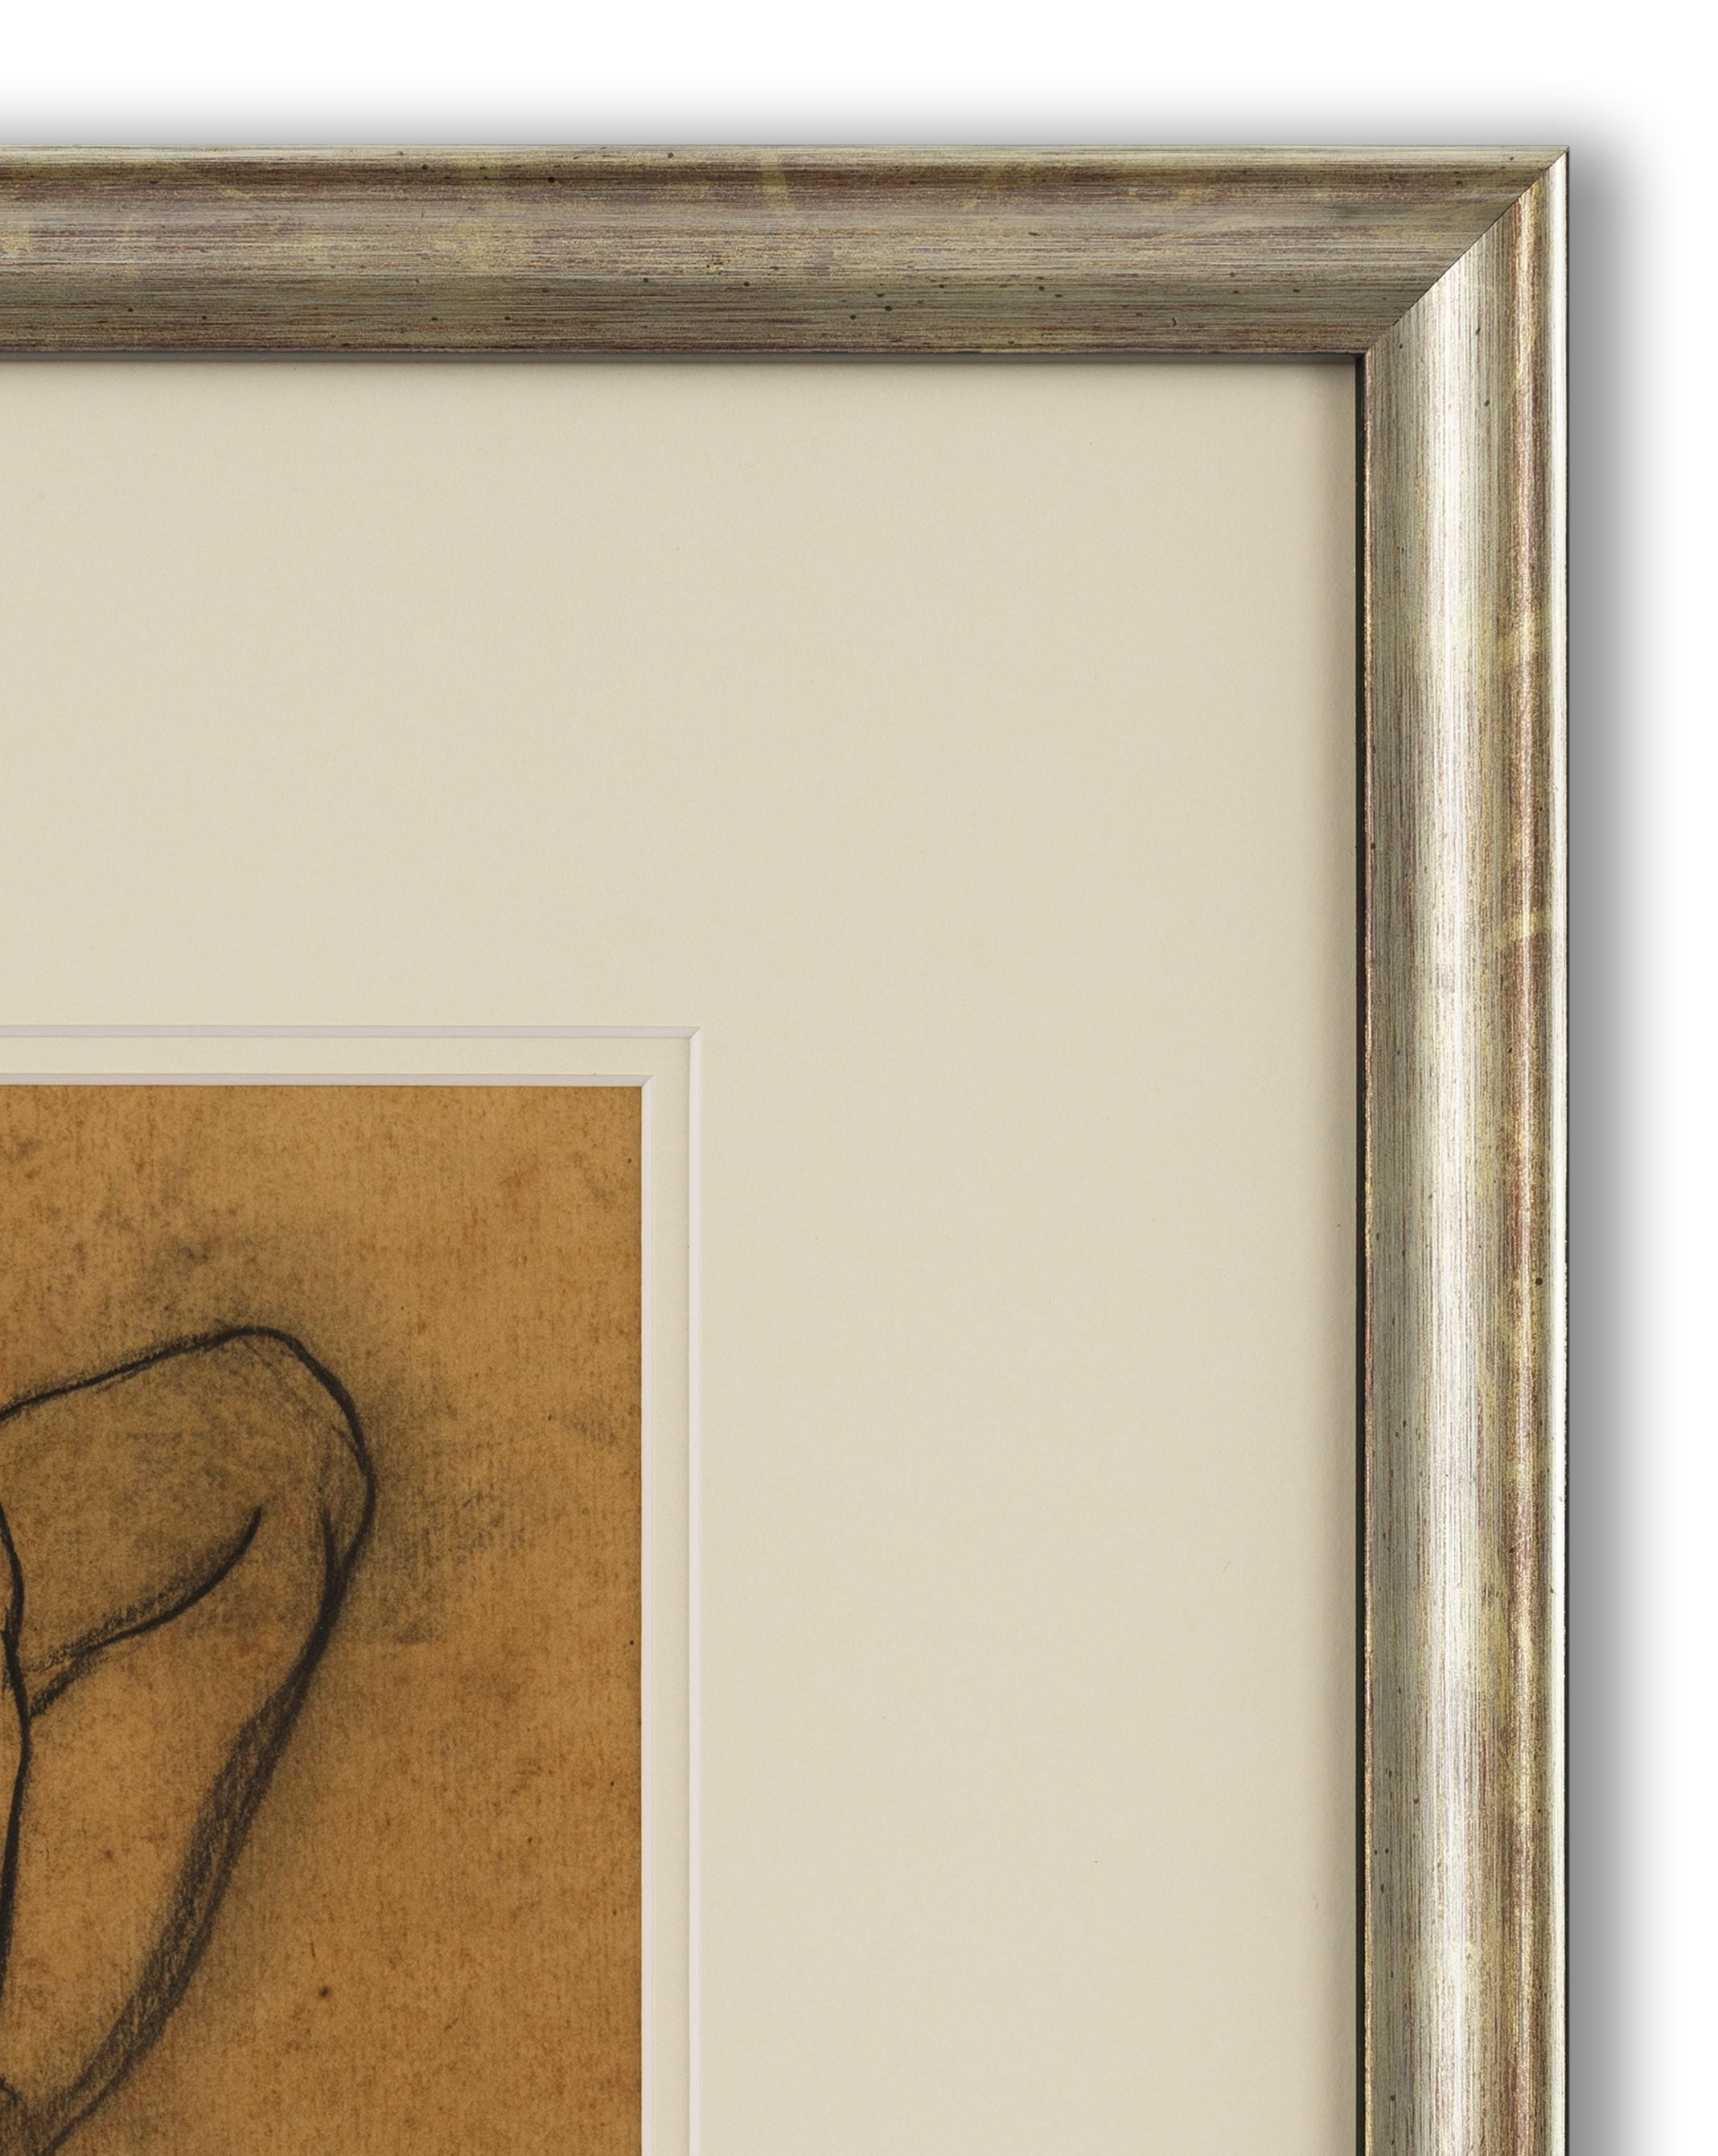 Craie noire et rouge sur papier, signé et daté (en bas à droite), 31cm x 27cm (50cm x 45cm encadré). 

Delmotte était un peintre, un dessinateur, un aquarelliste et un sculpteur belge. D'abord peintre réaliste, il est influencé par l'expressionnisme